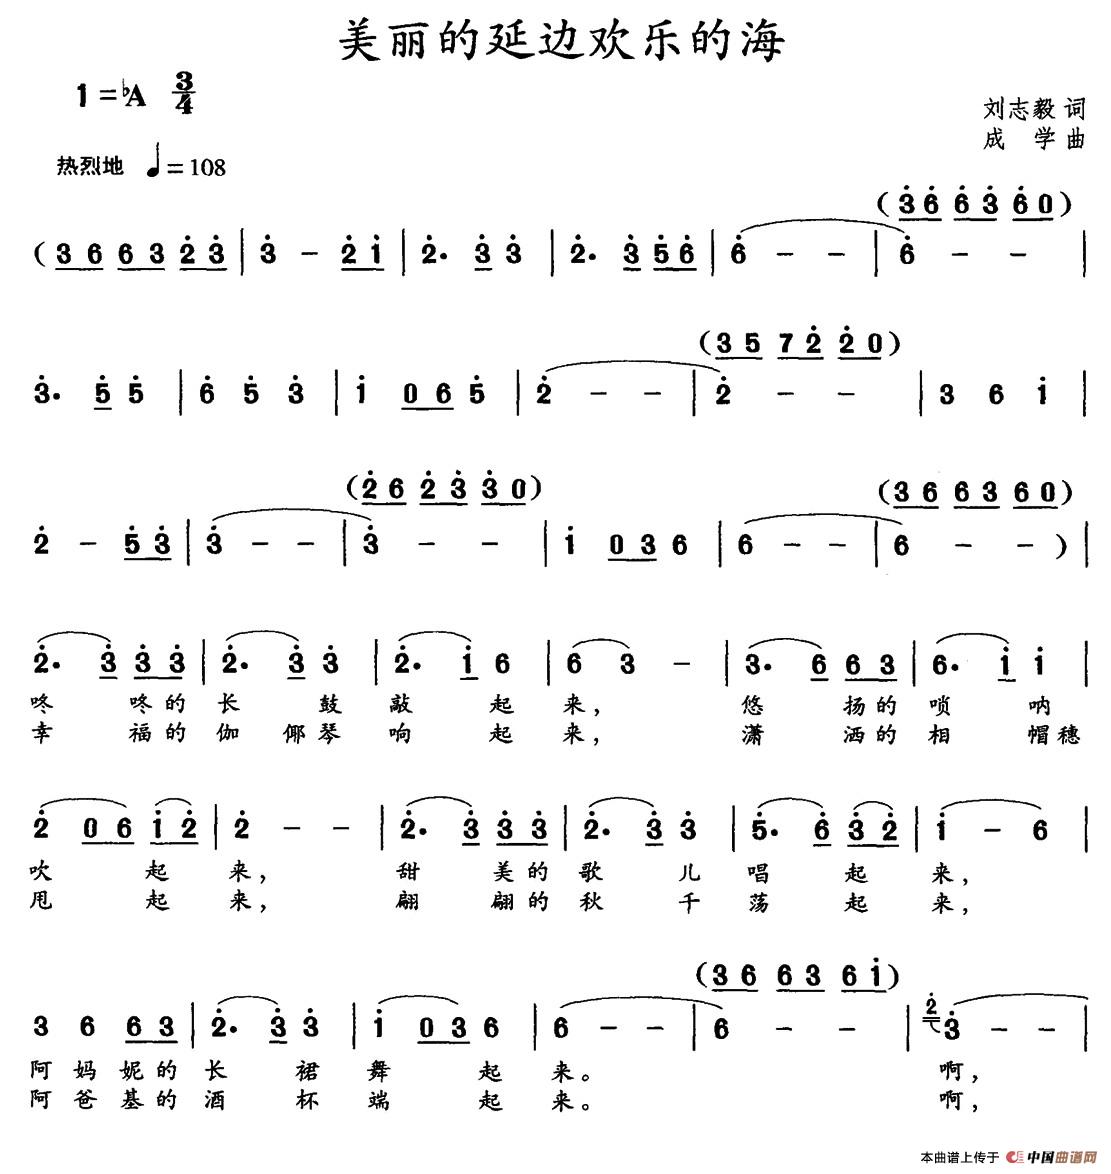 美丽的延边欢乐的海（刘志毅词 成学曲）(1)_001 (1).jpg